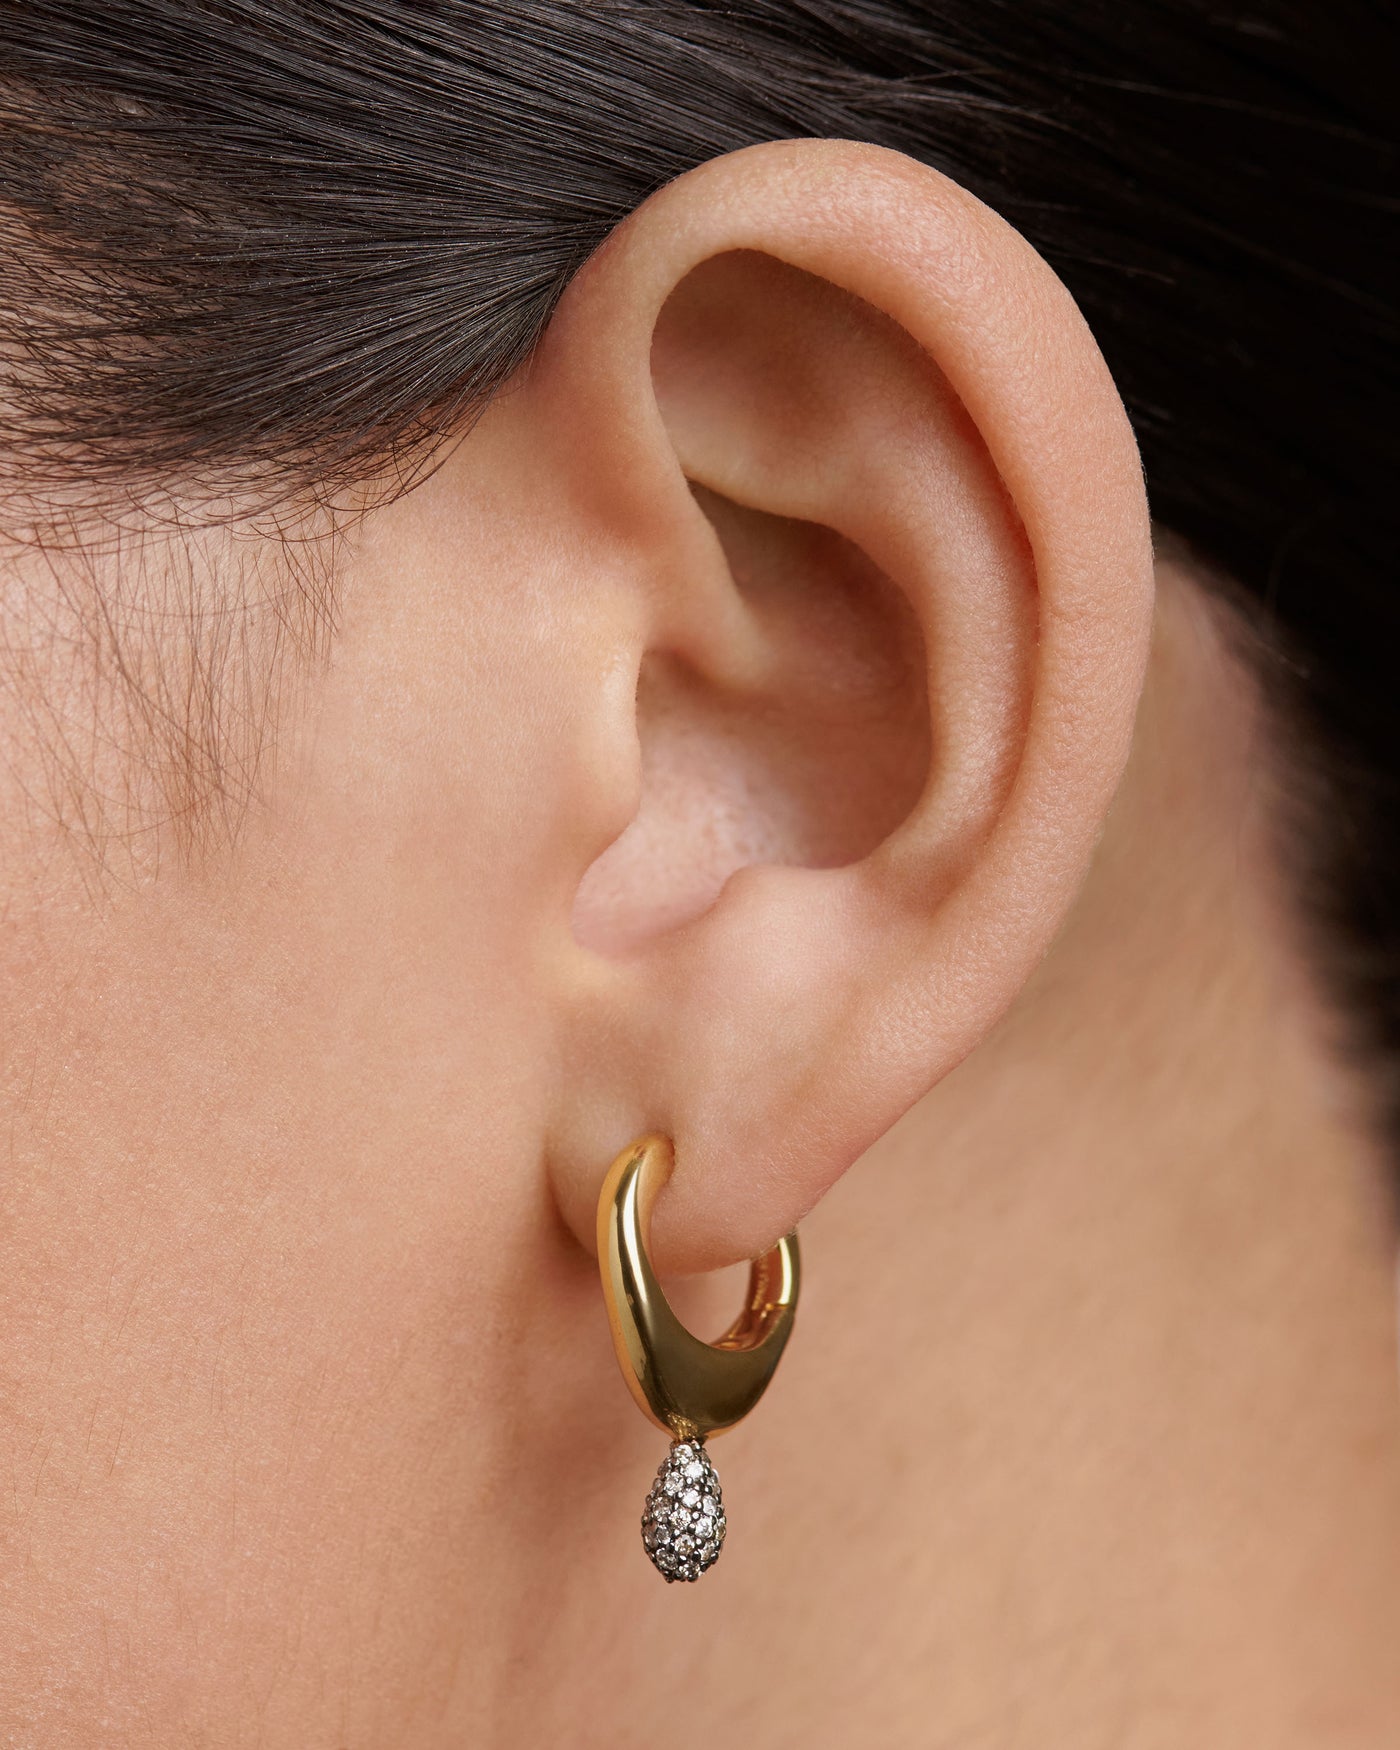   ear piercings